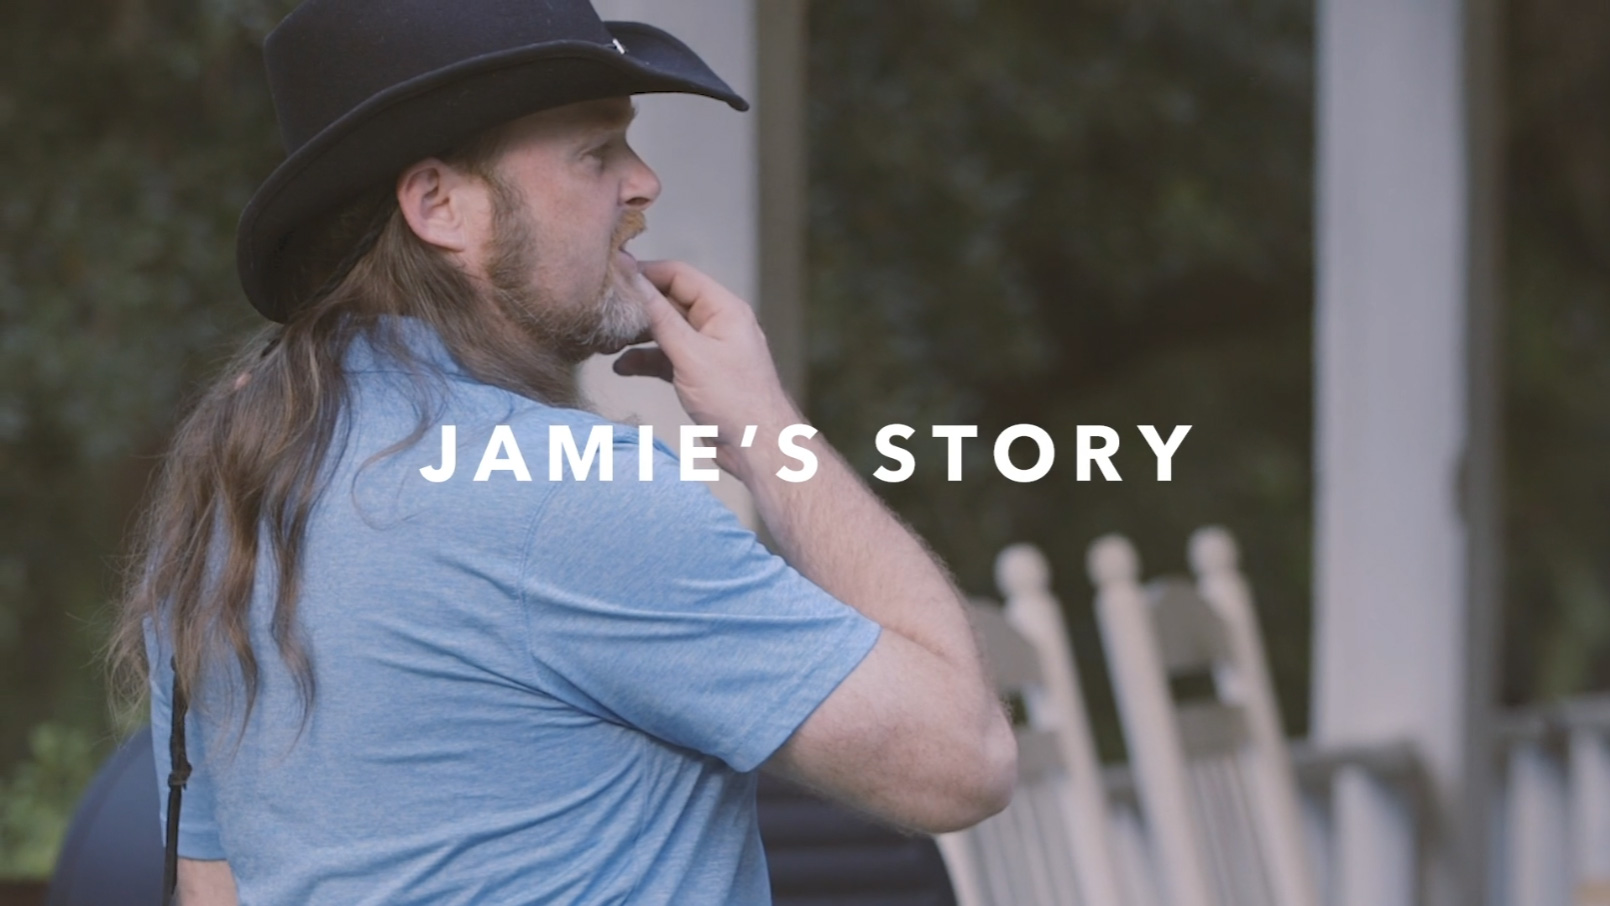 Watch Jamie’s Story